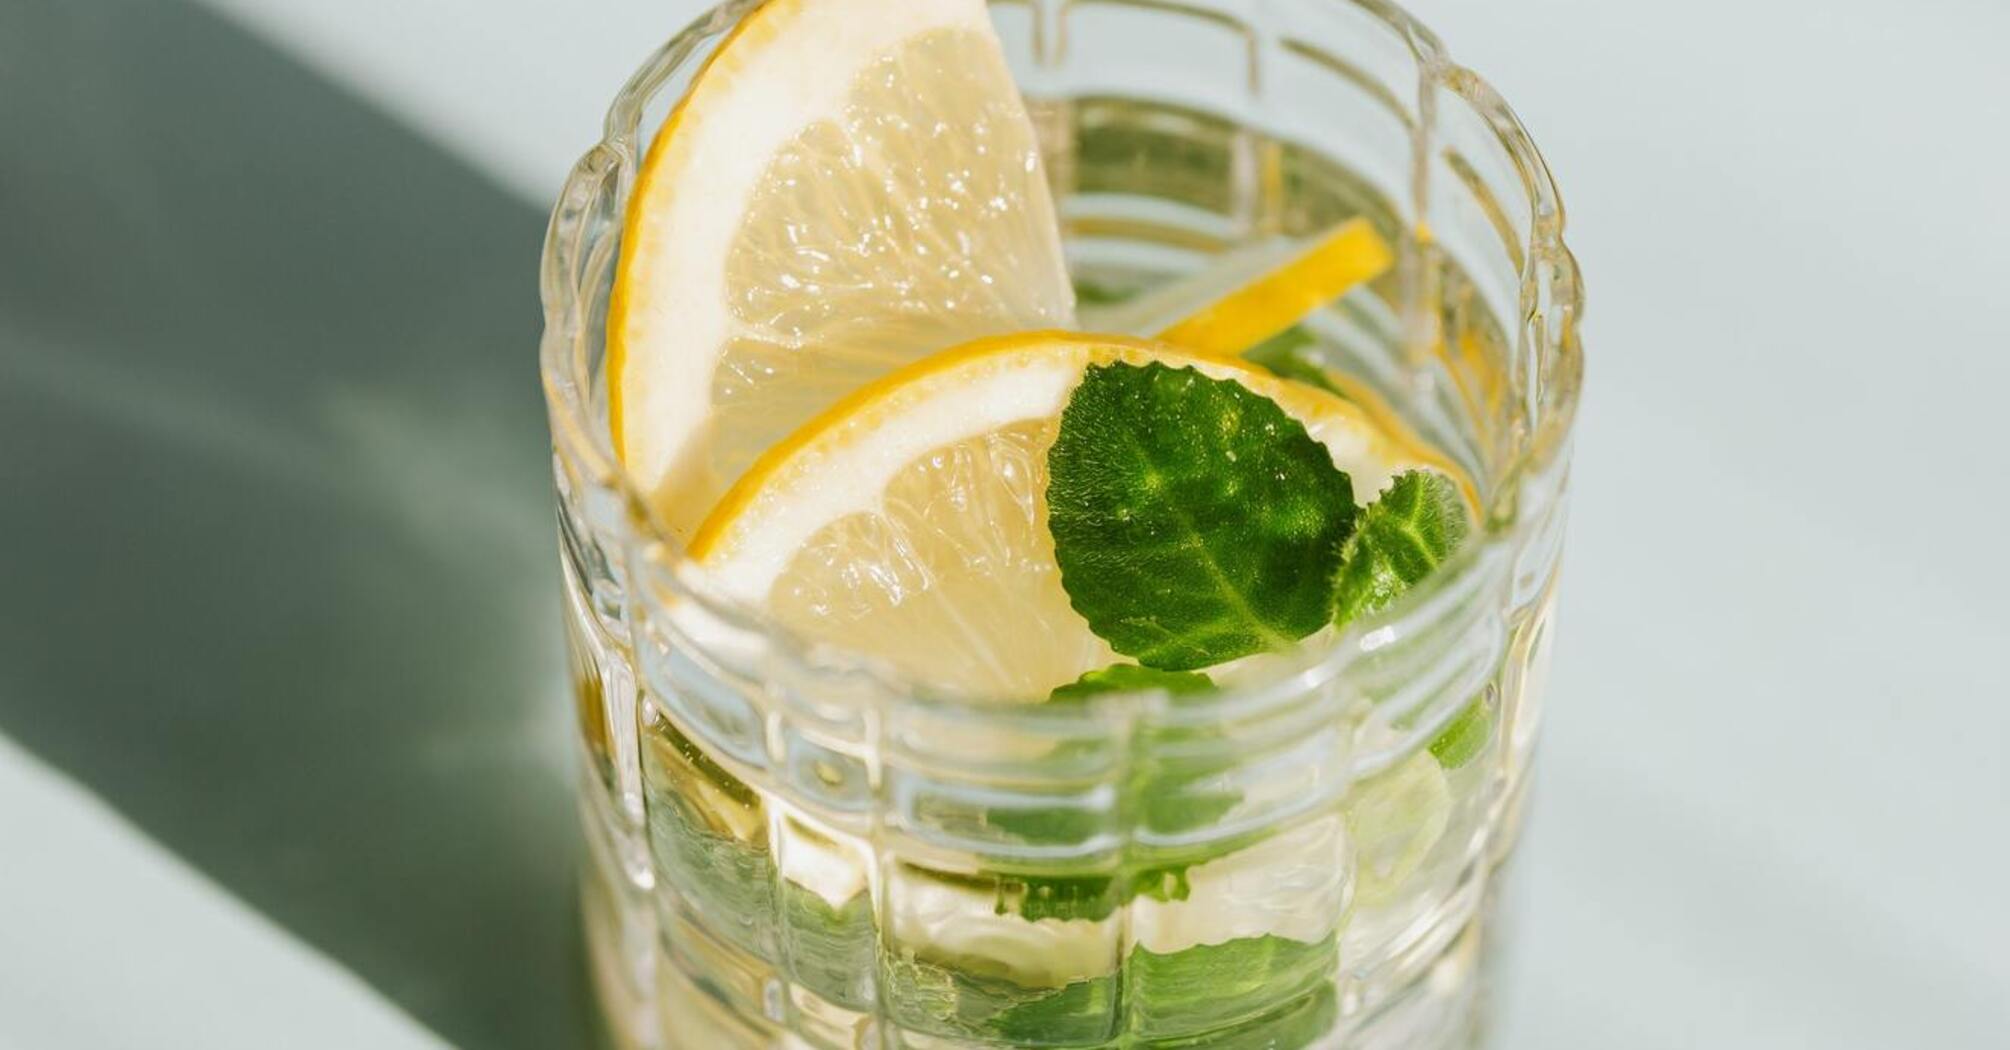 Why drink lemon water